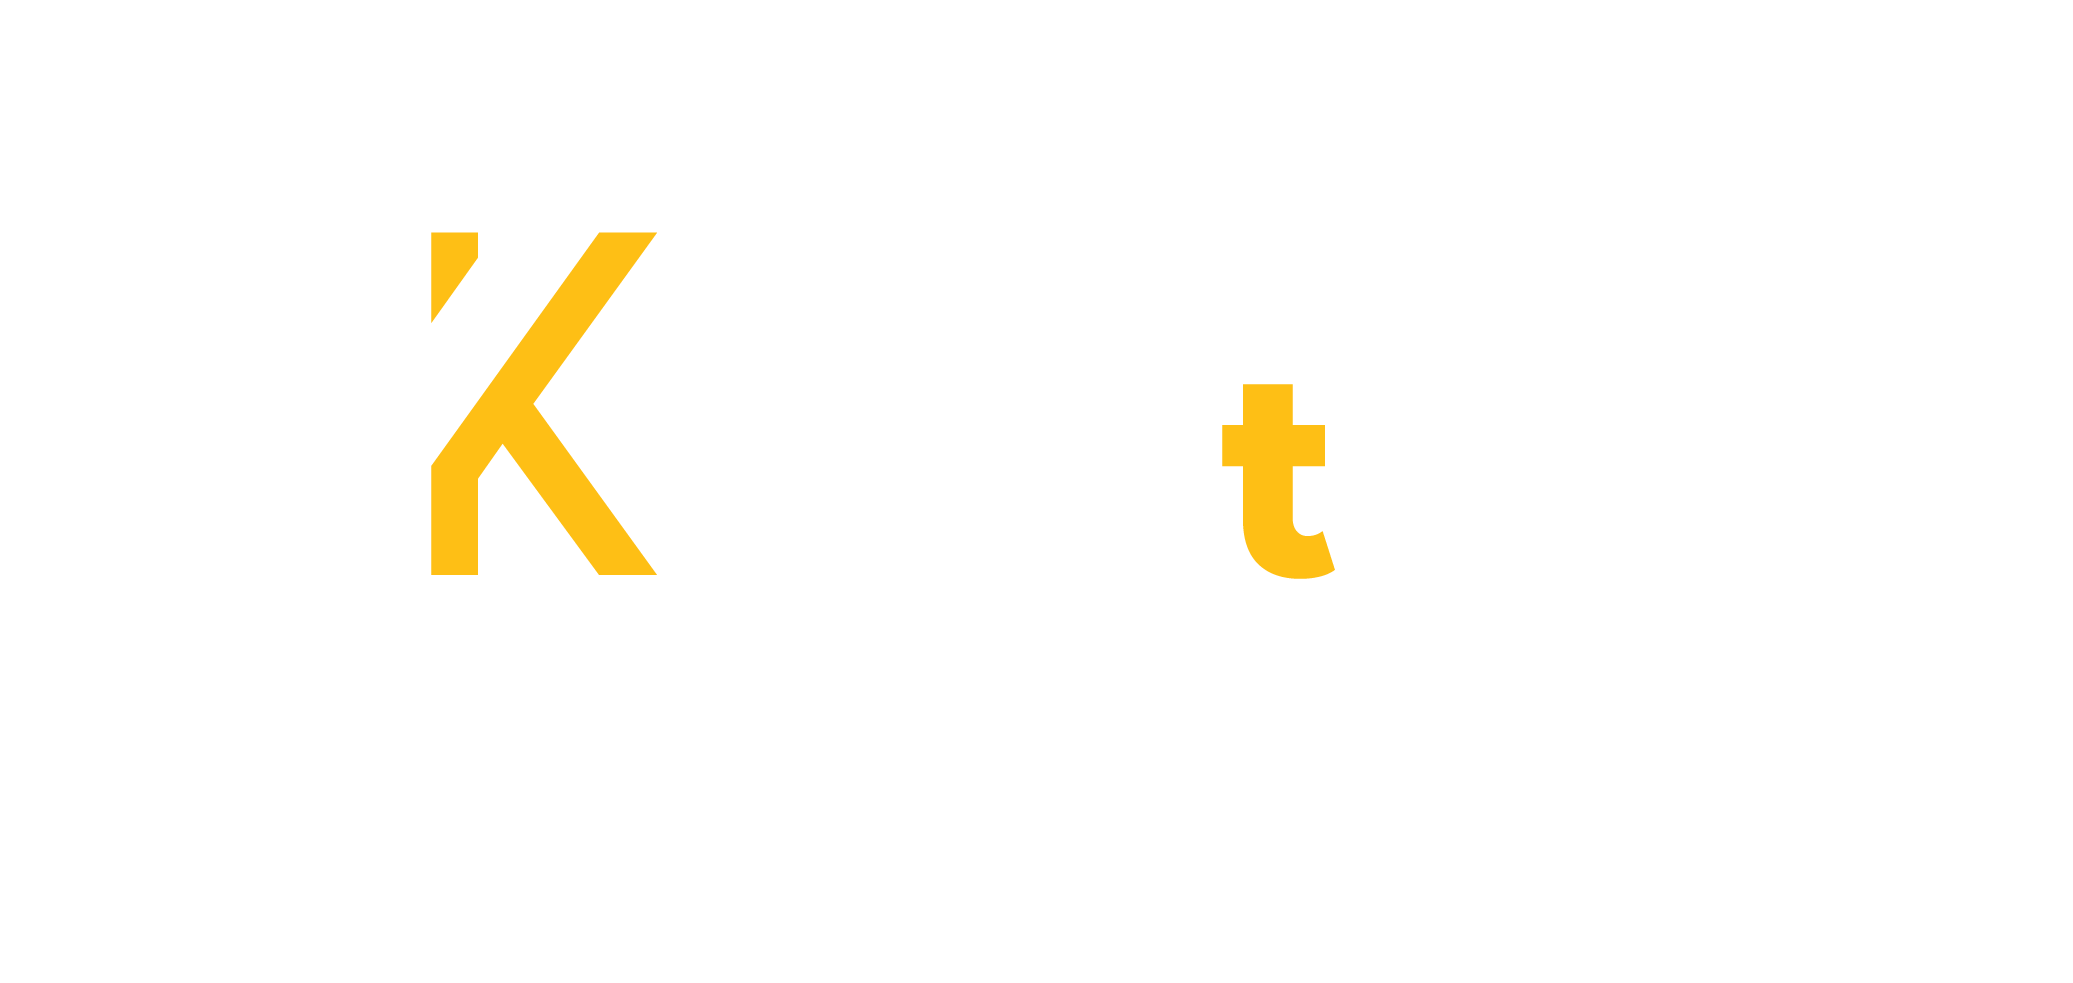 YK Infotech